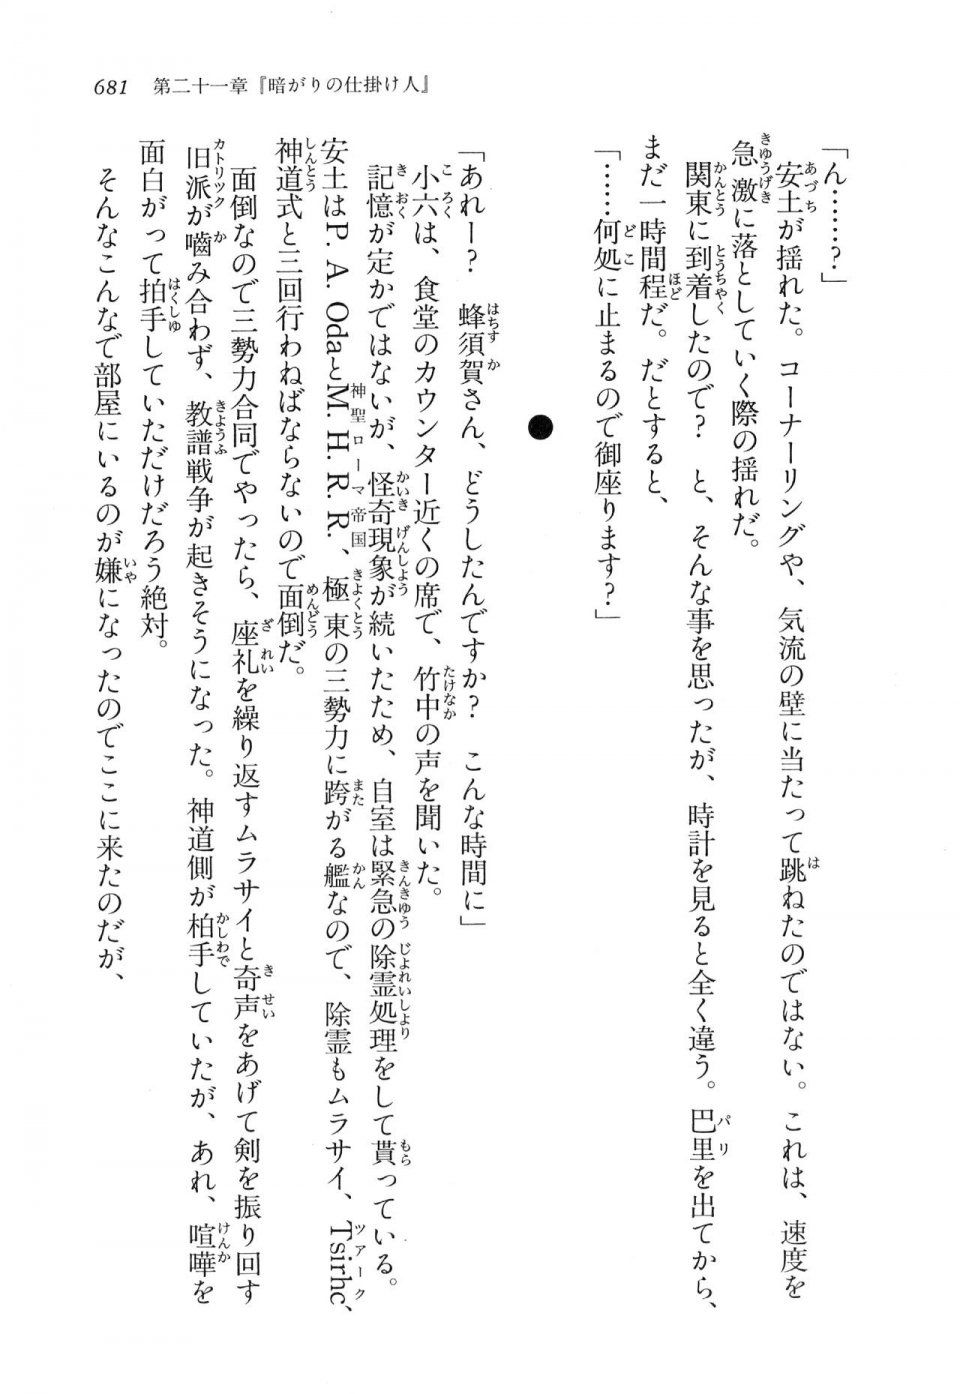 Kyoukai Senjou no Horizon LN Vol 16(7A) - Photo #681